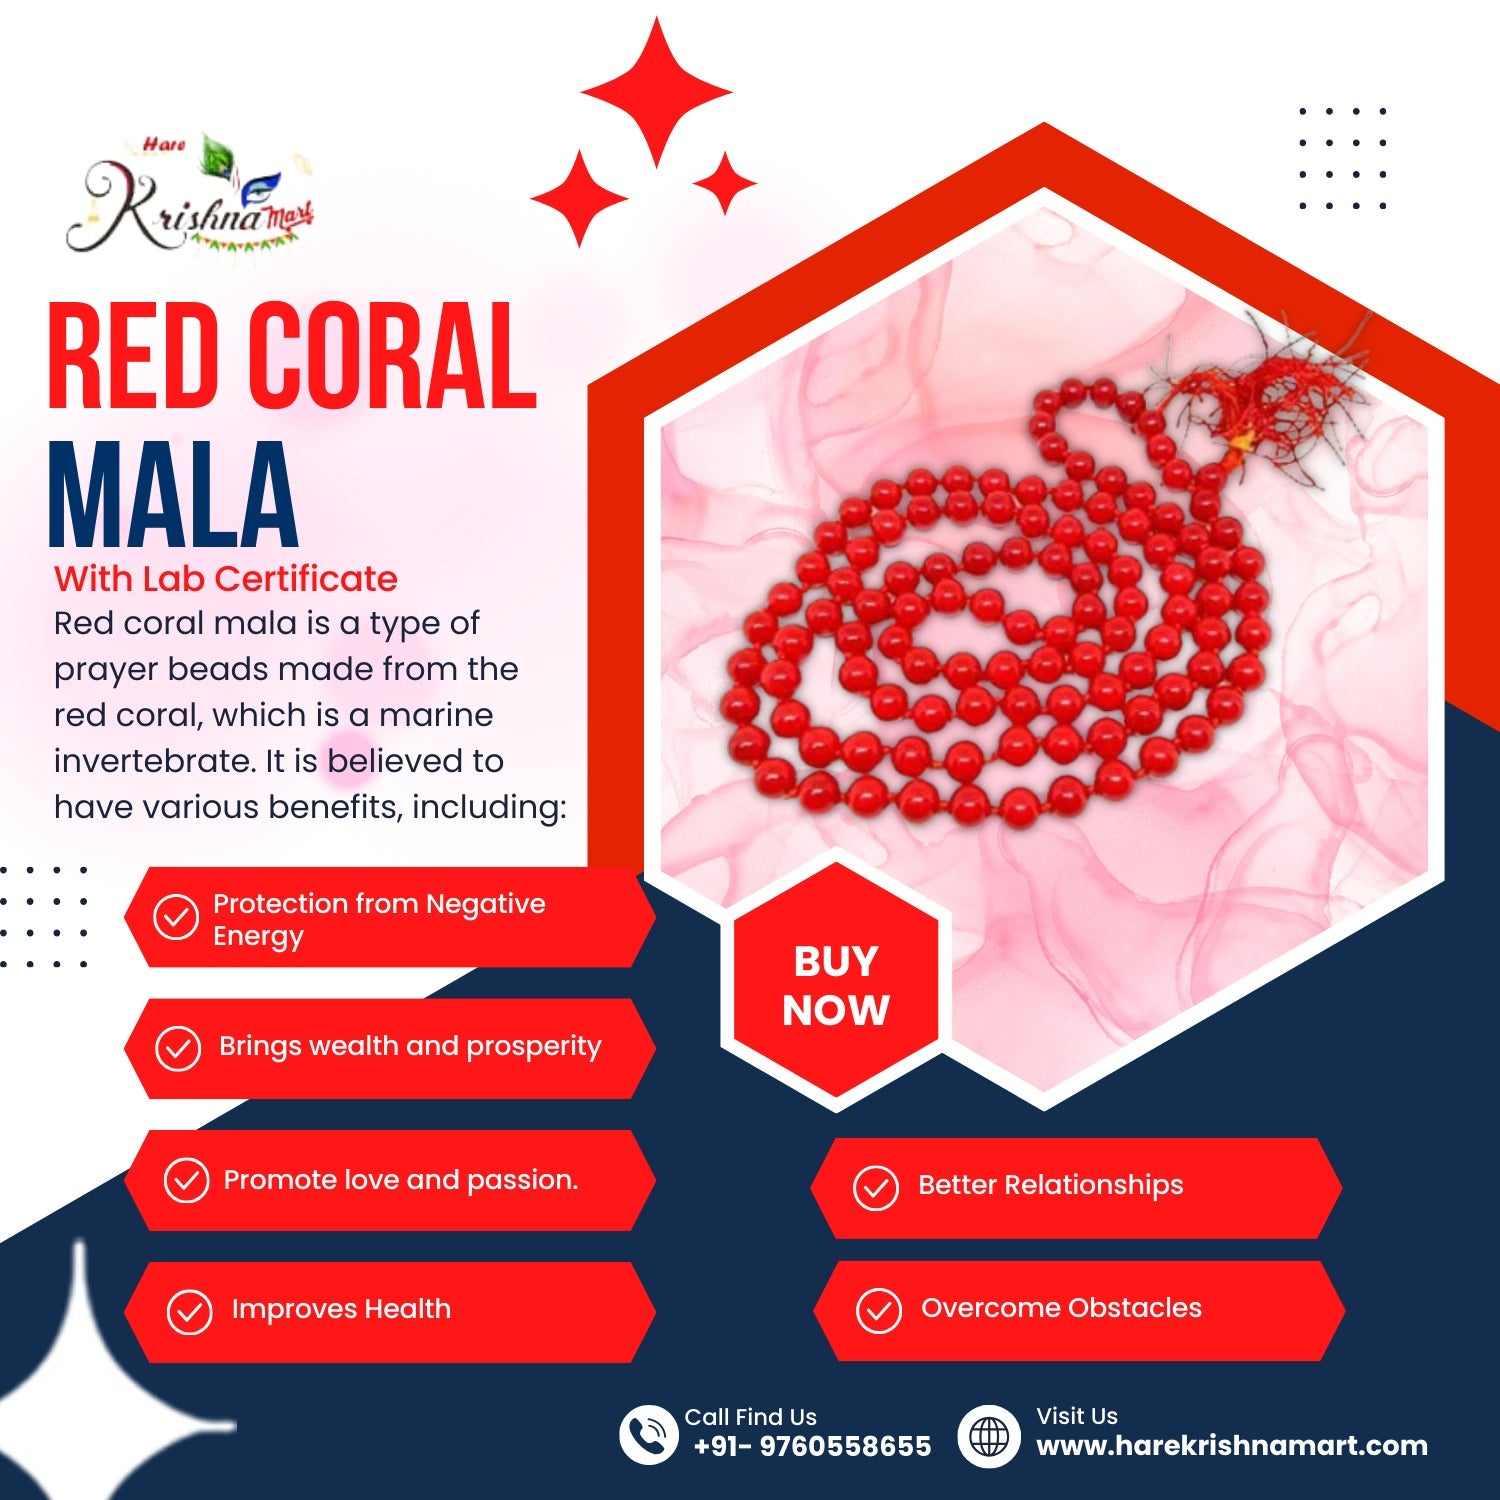 red coral mala||original red coral mala benefits| original red coral mala price|munga mala |munga mala beenfits|munga mala price| certified red coral mala